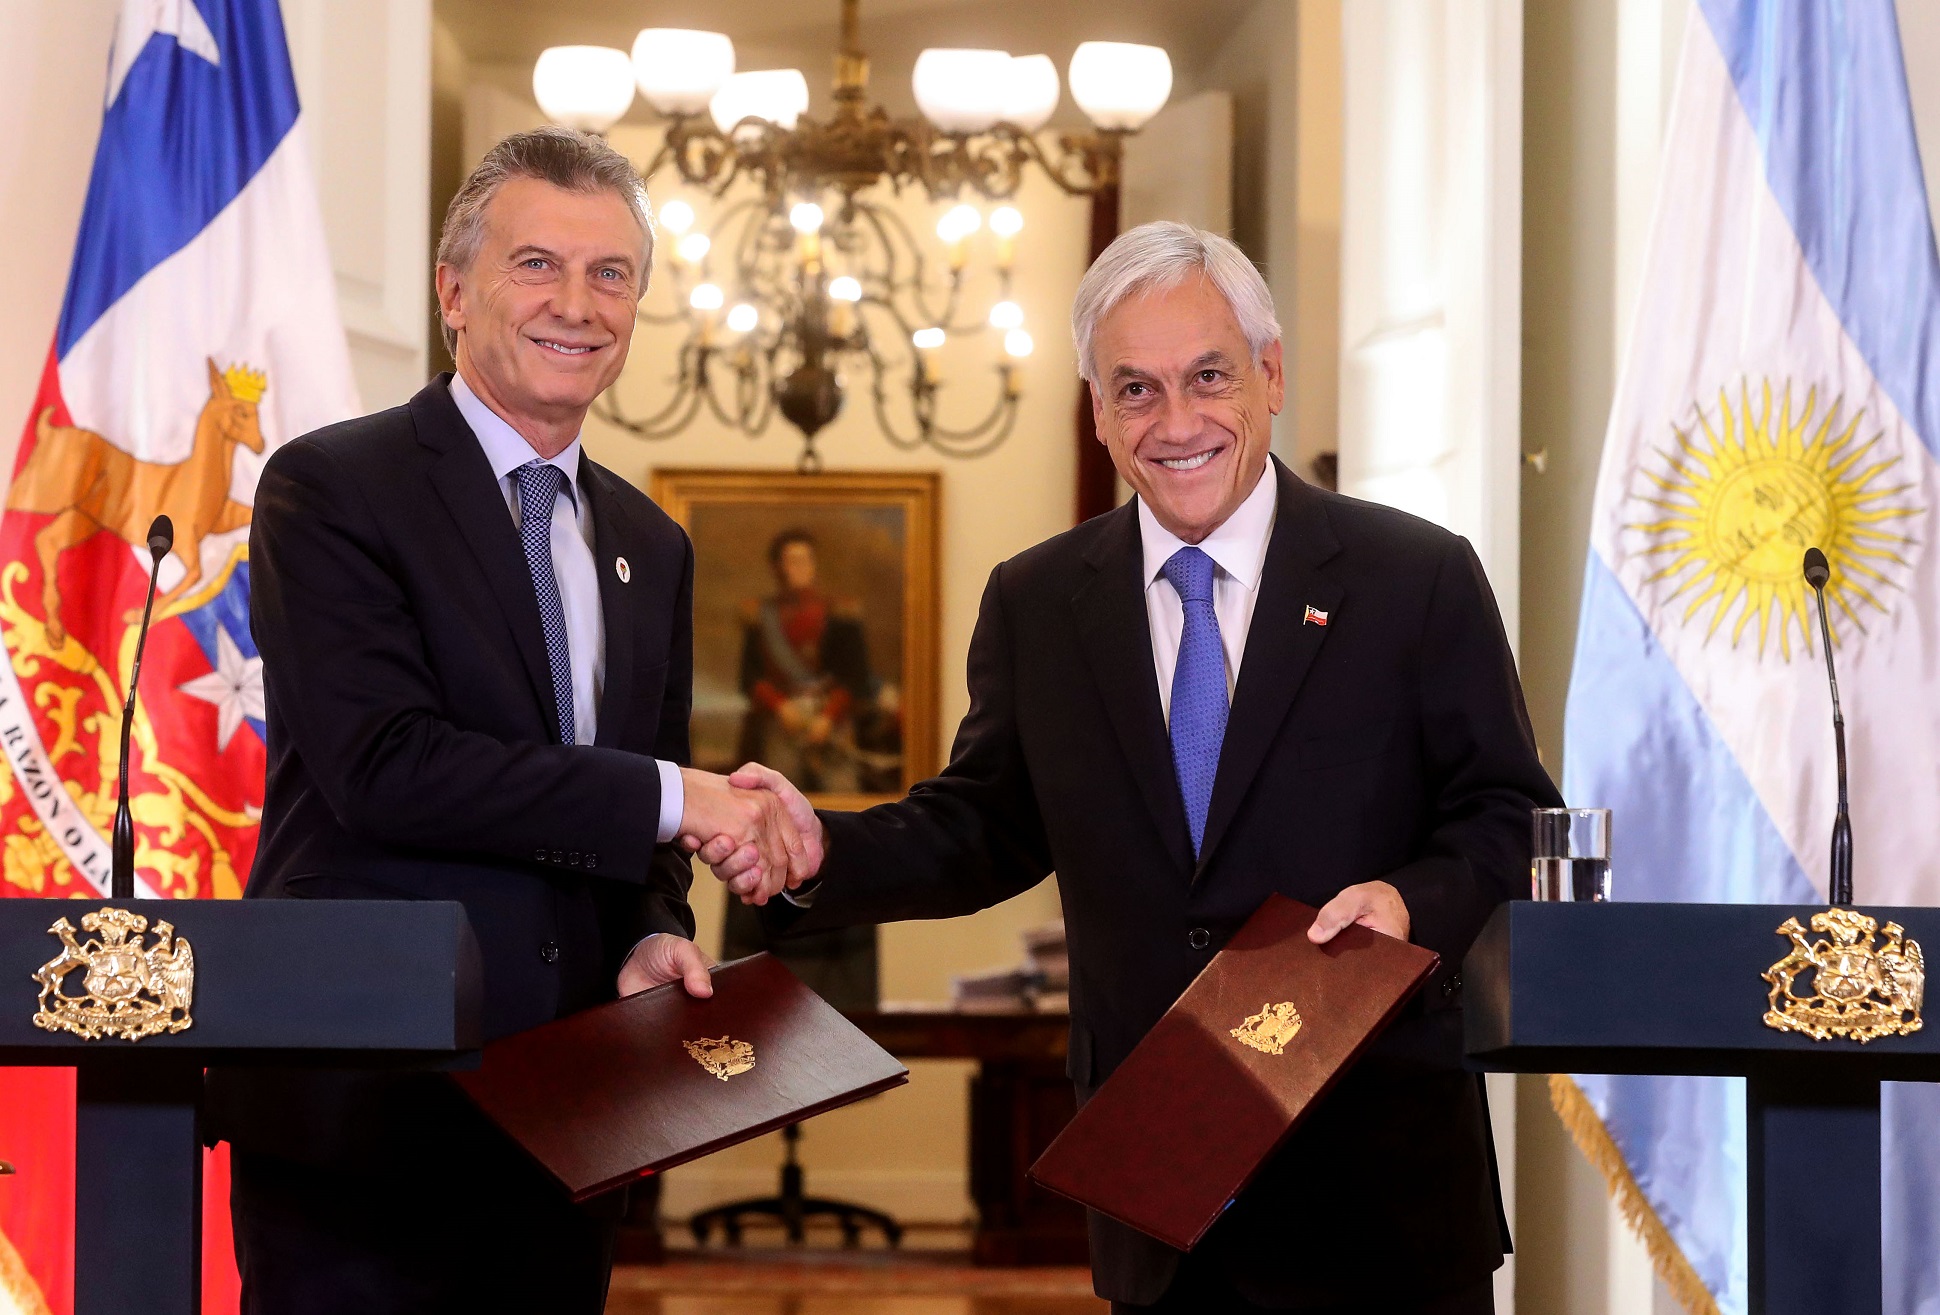 Declaración conjunta de los presidentes Macri y Piñera